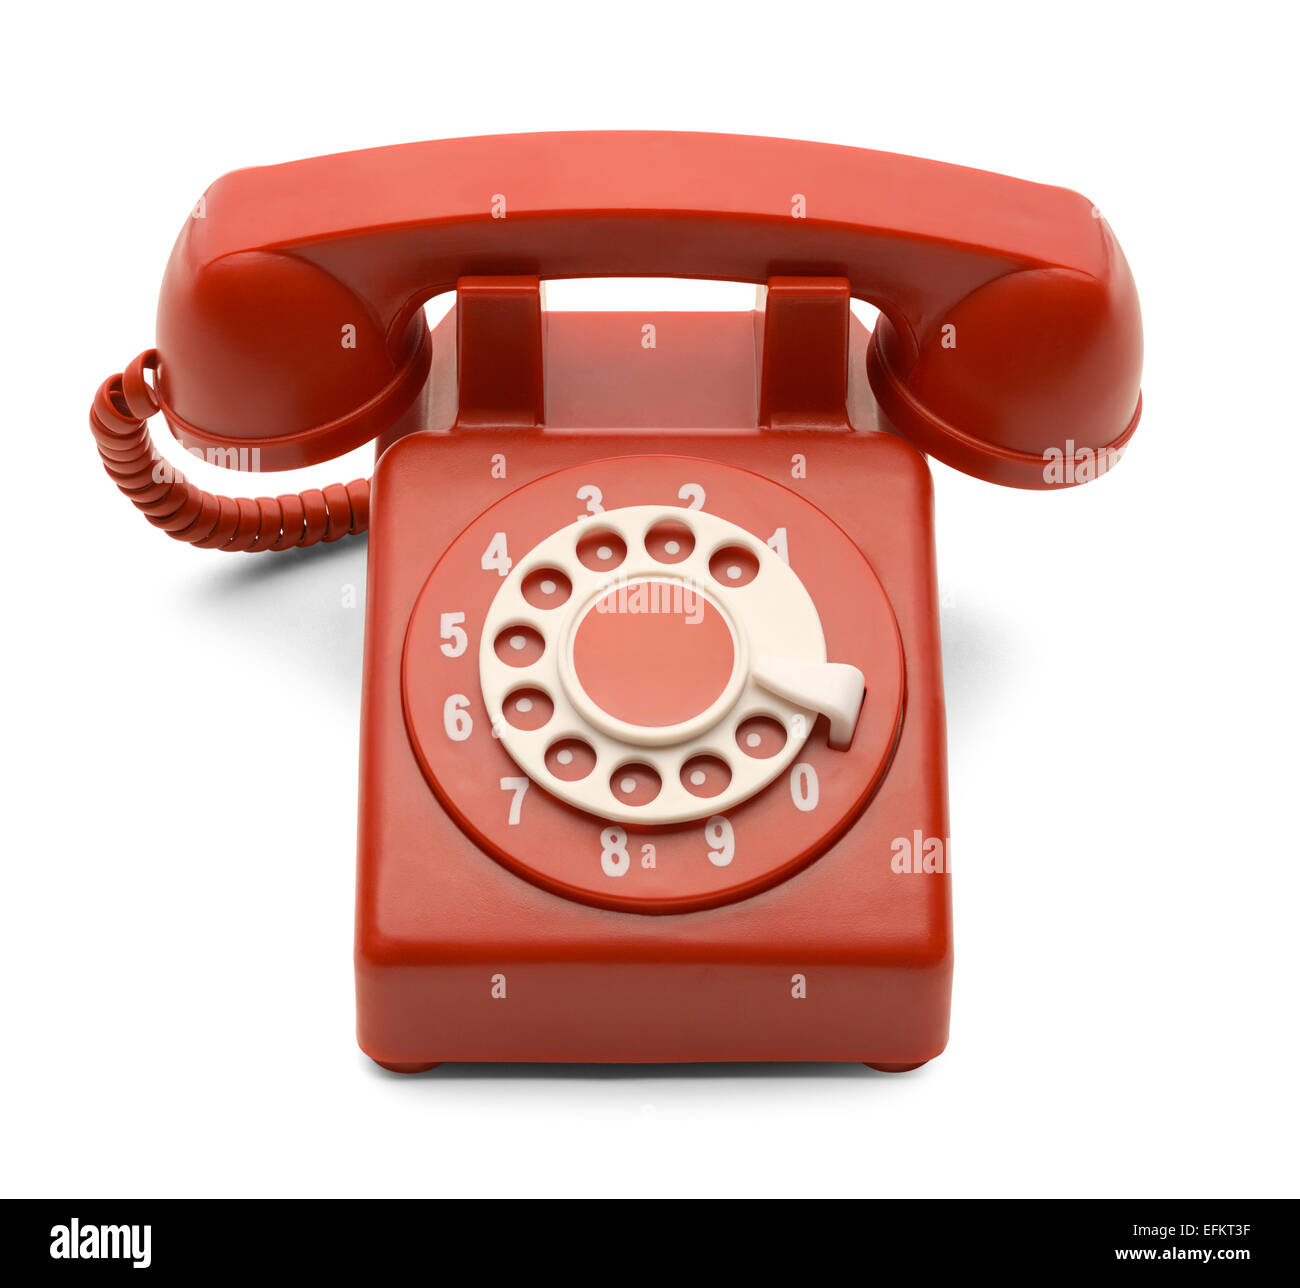 Rote und weiße Telefon mit Wählscheibe Isolated on White Background. Stockfoto